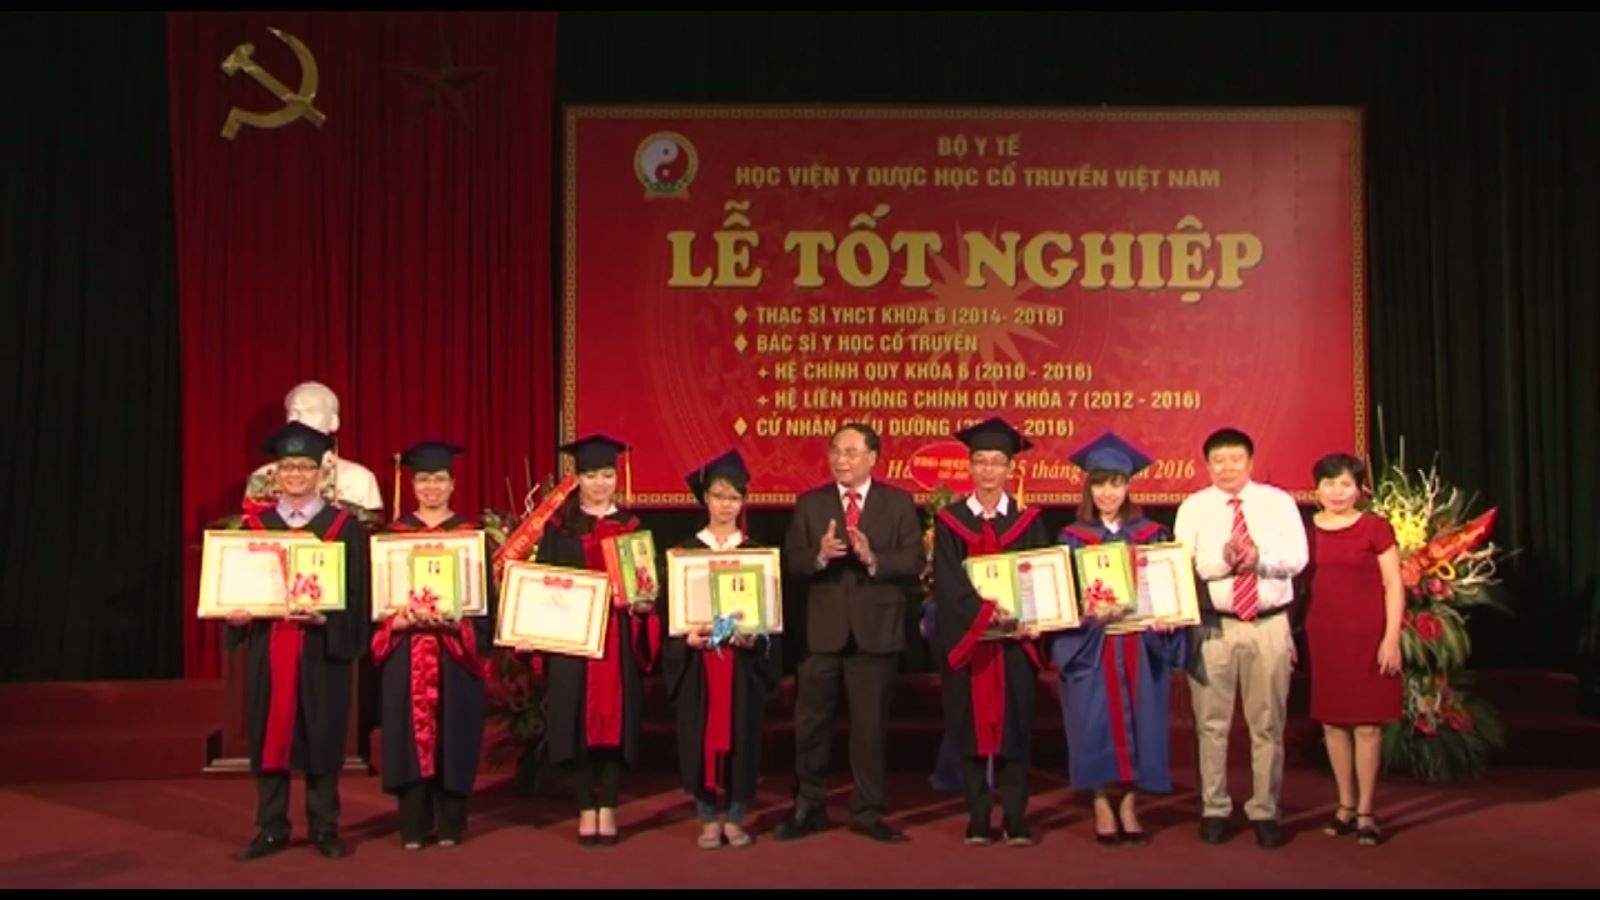 Lễ tốt nghiệp năm 2016 của Học viện Y Dược học cổ truyền Việt Nam